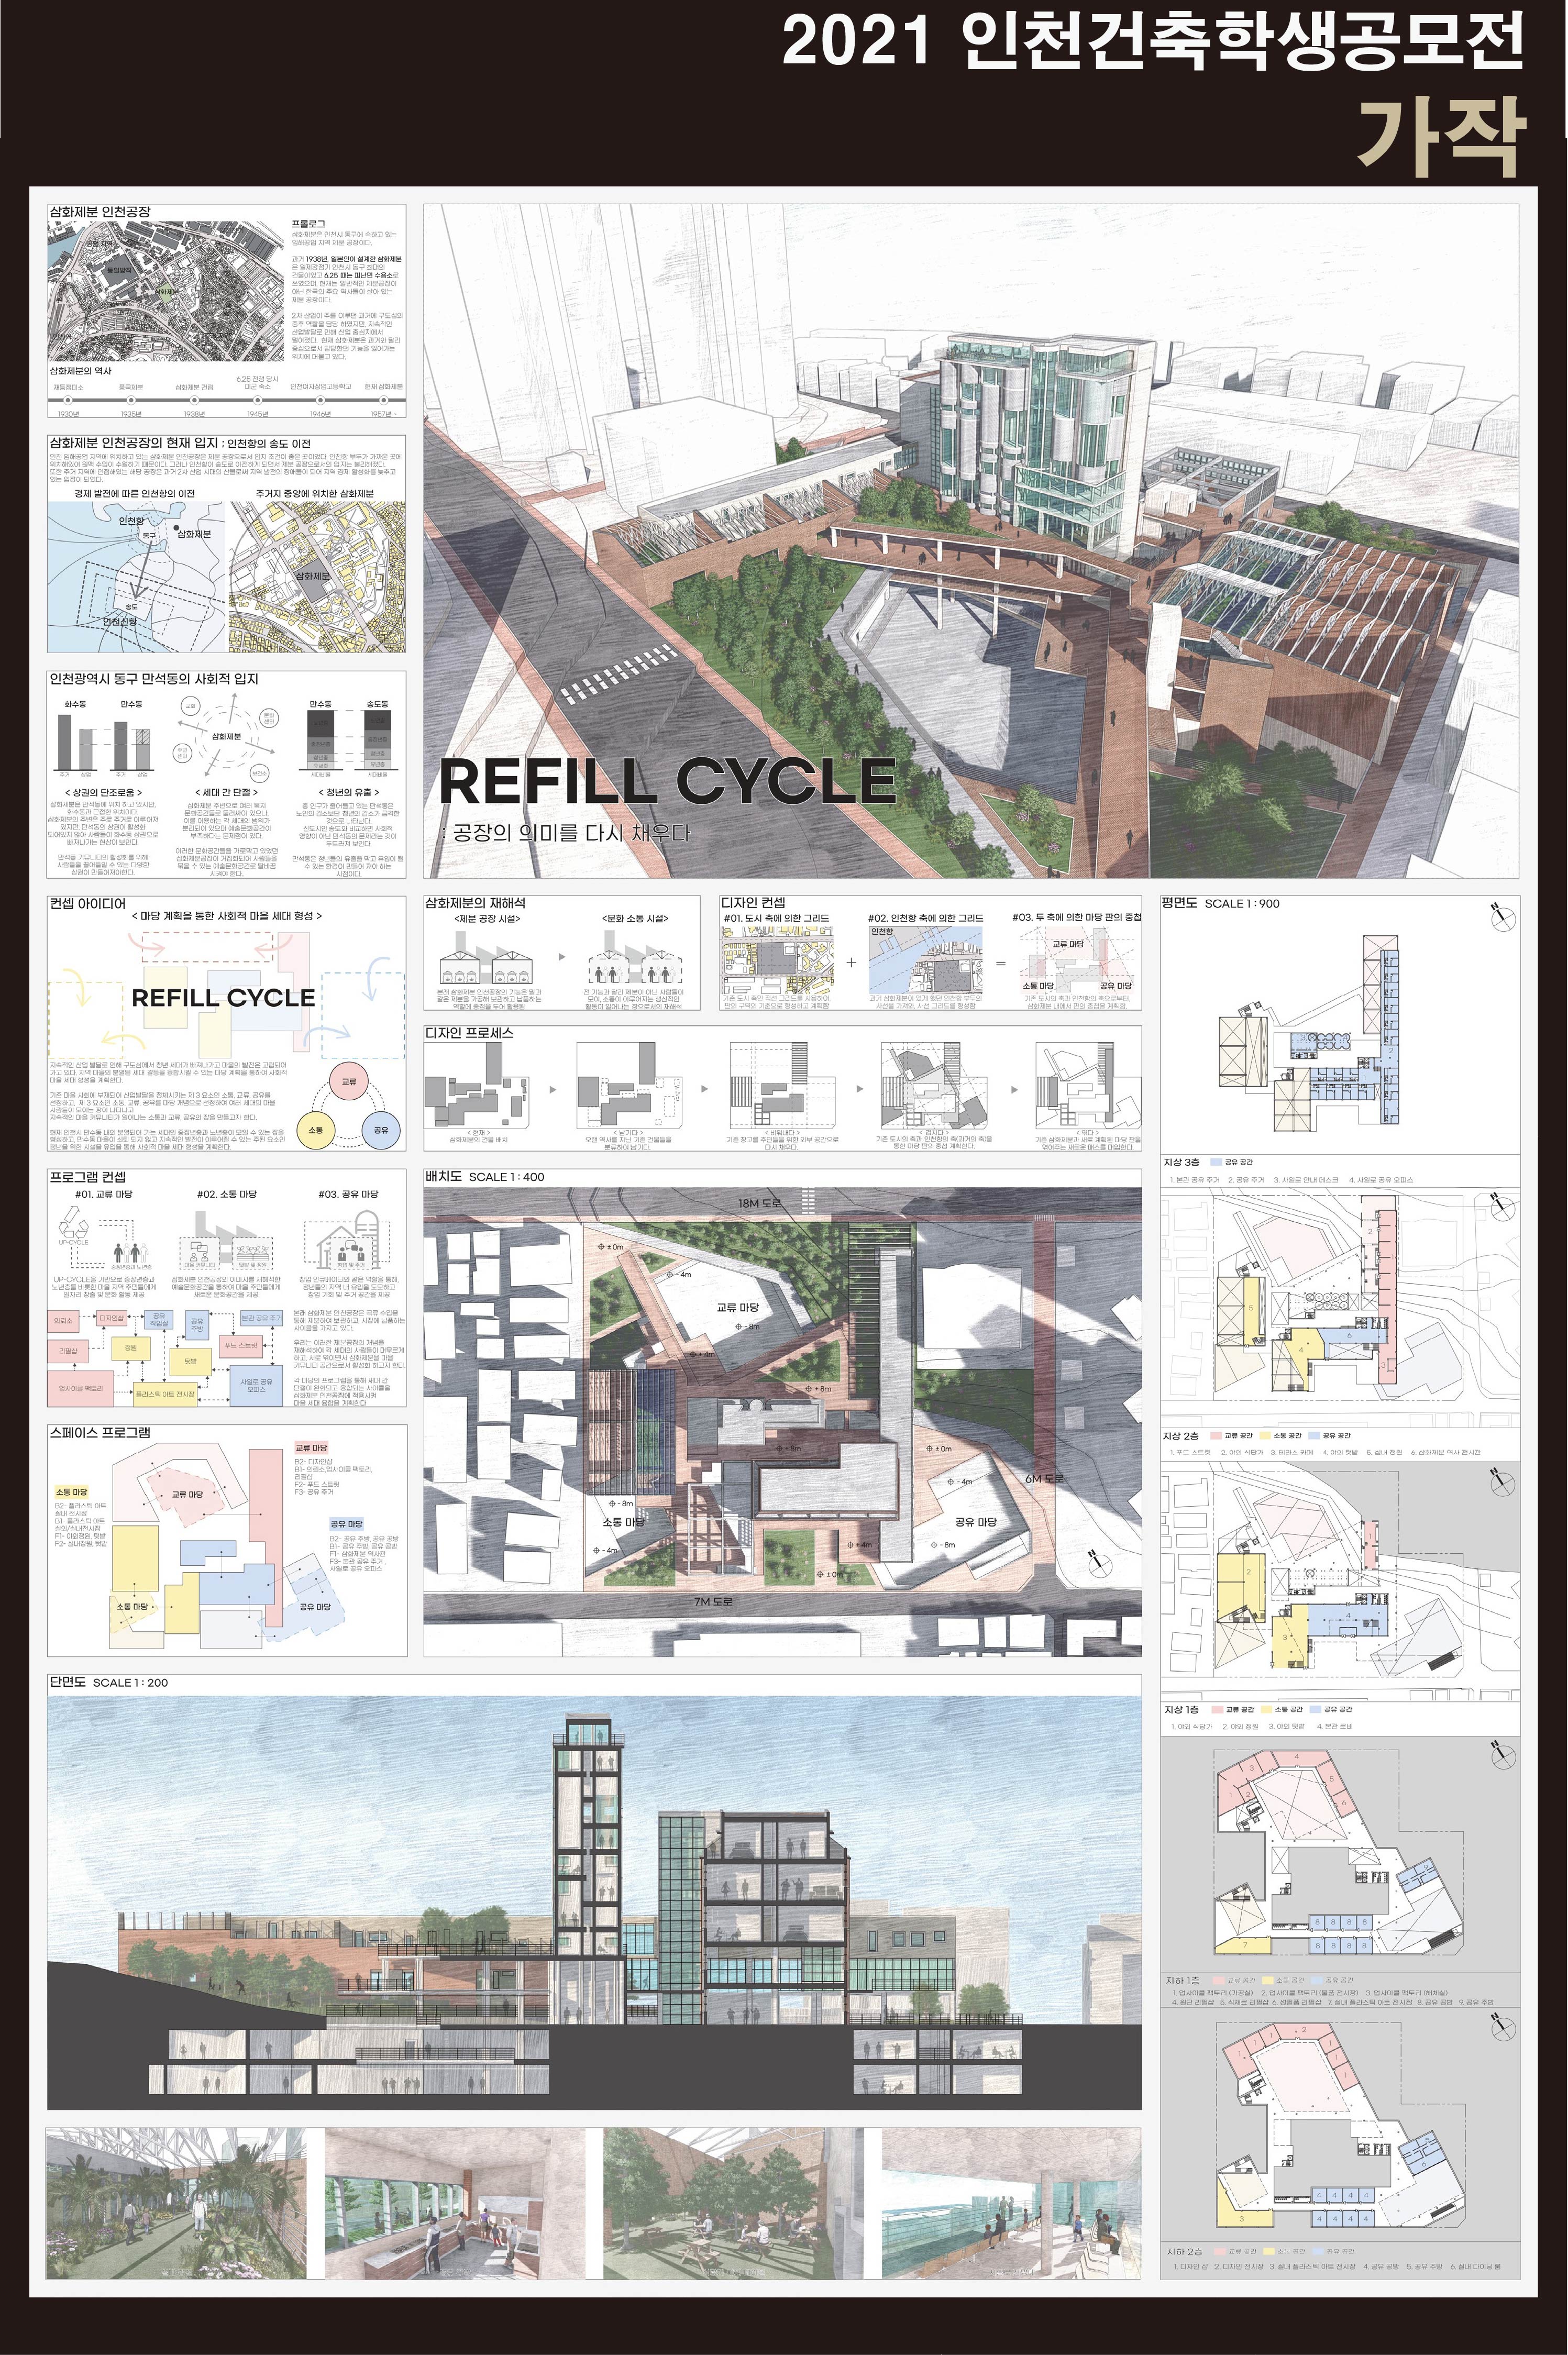 2021 인천건축학생공모전 가작 수상_REFILL CYCLE 2021 인천건축학생공모전 가작수상1.jpg